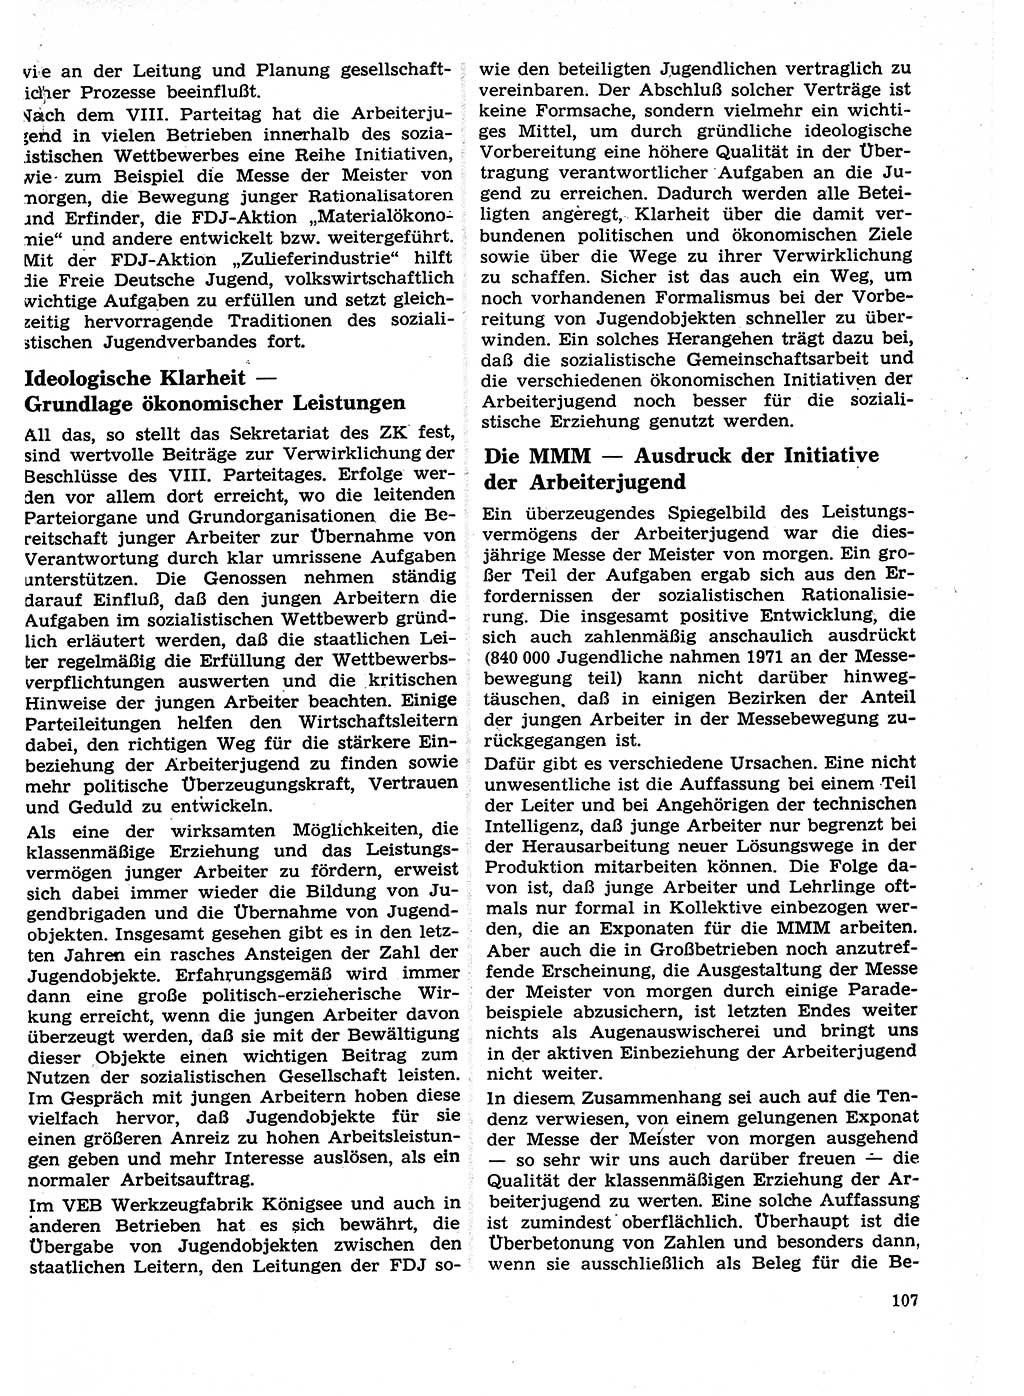 Neuer Weg (NW), Organ des Zentralkomitees (ZK) der SED (Sozialistische Einheitspartei Deutschlands) für Fragen des Parteilebens, 27. Jahrgang [Deutsche Demokratische Republik (DDR)] 1972, Seite 107 (NW ZK SED DDR 1972, S. 107)